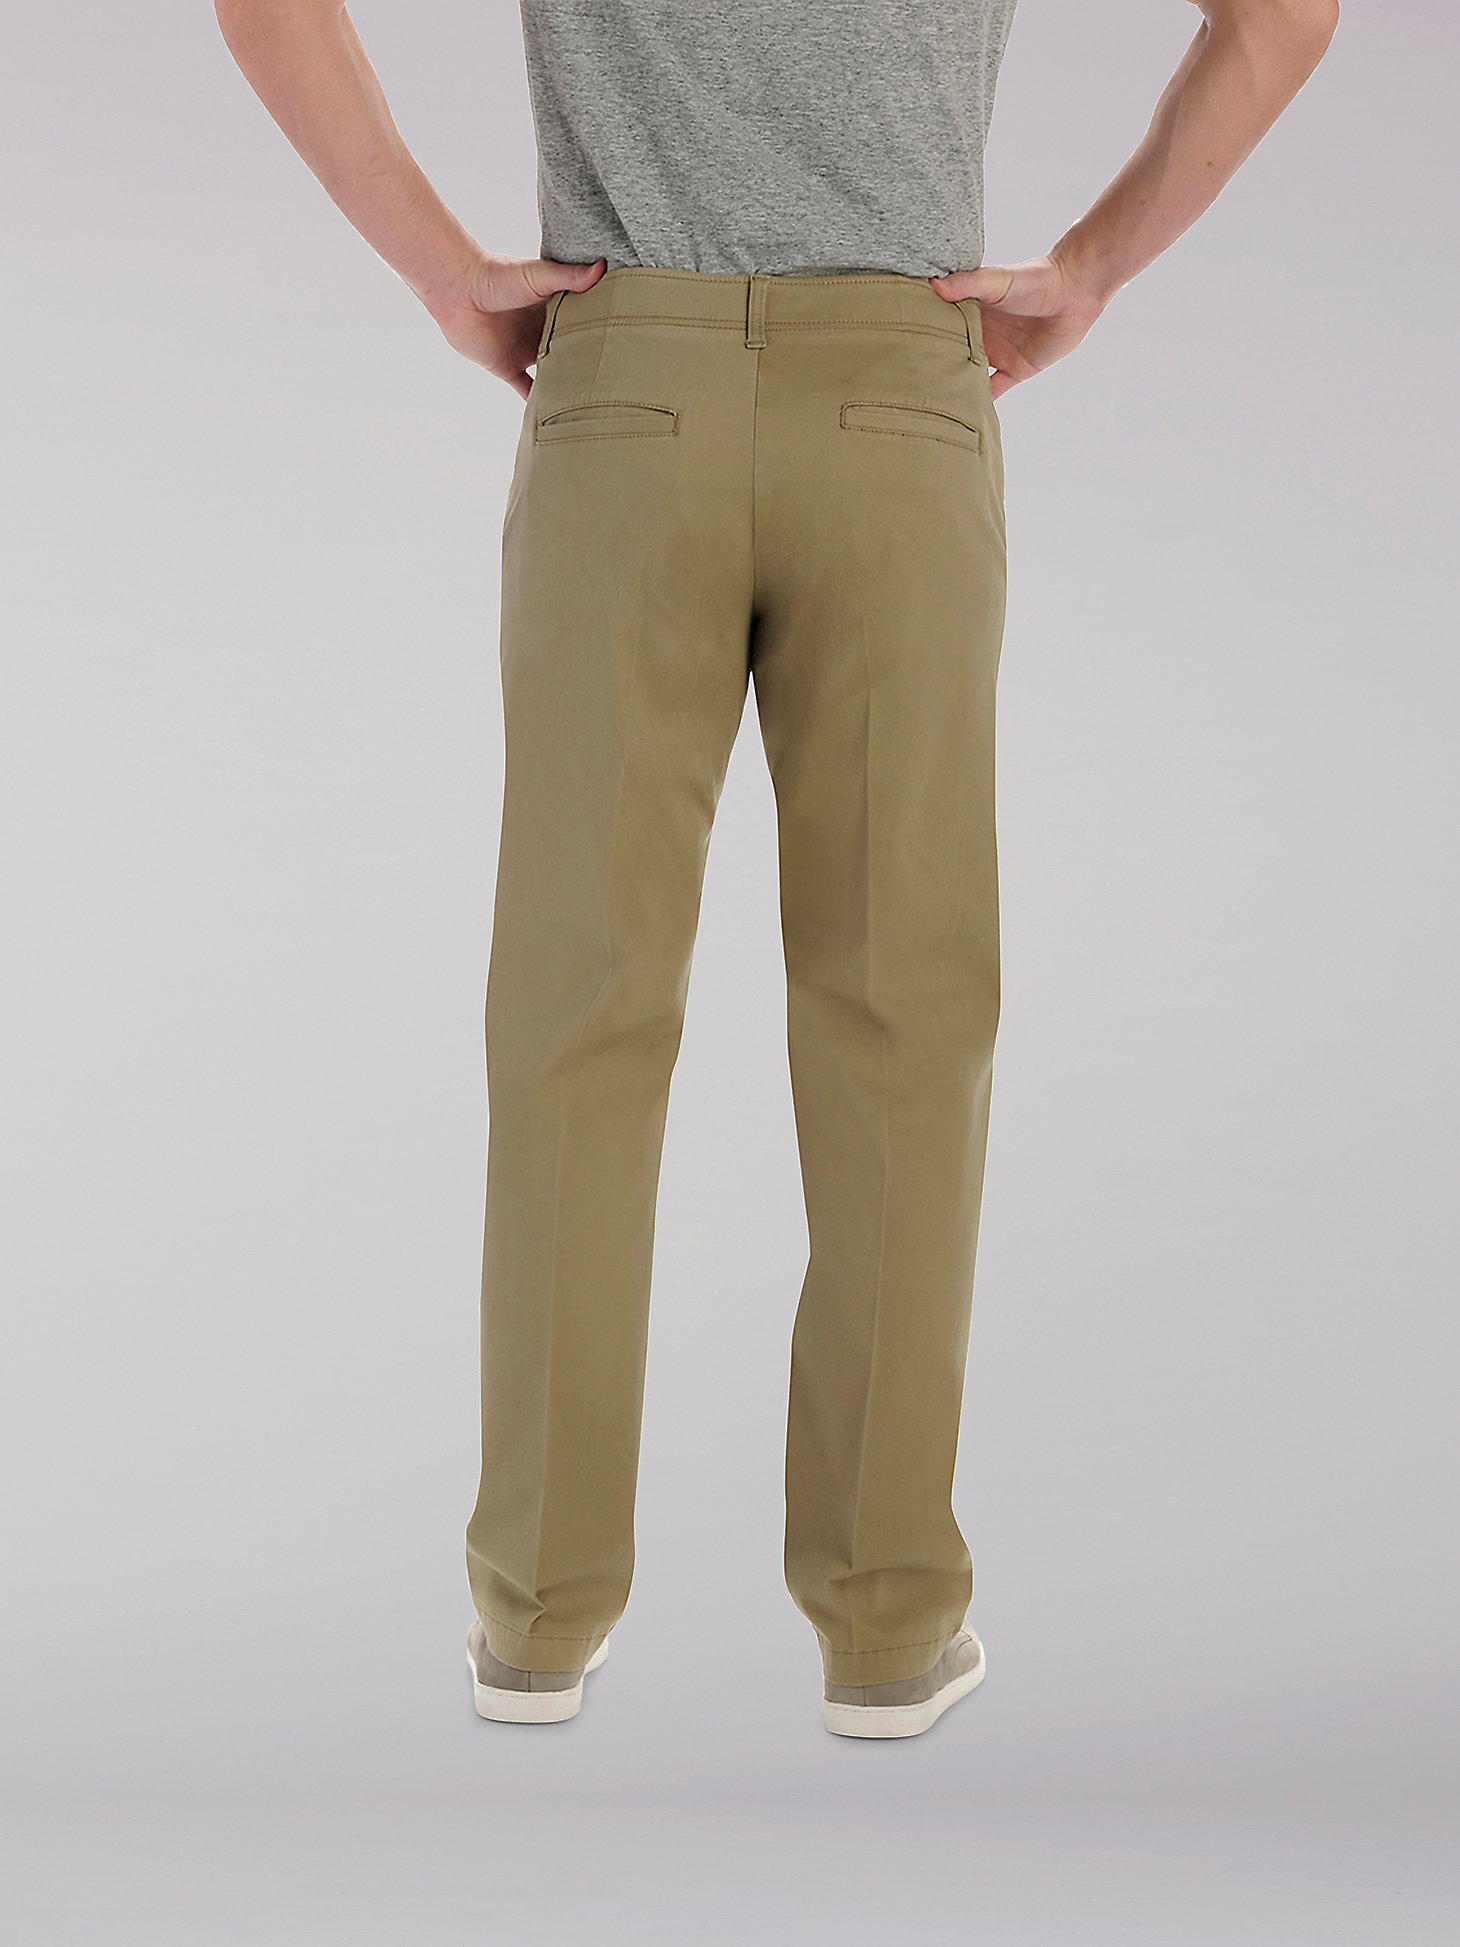 Men's Extreme Motion Khaki Pant (Big & Tall) | Men's Pants | Lee®